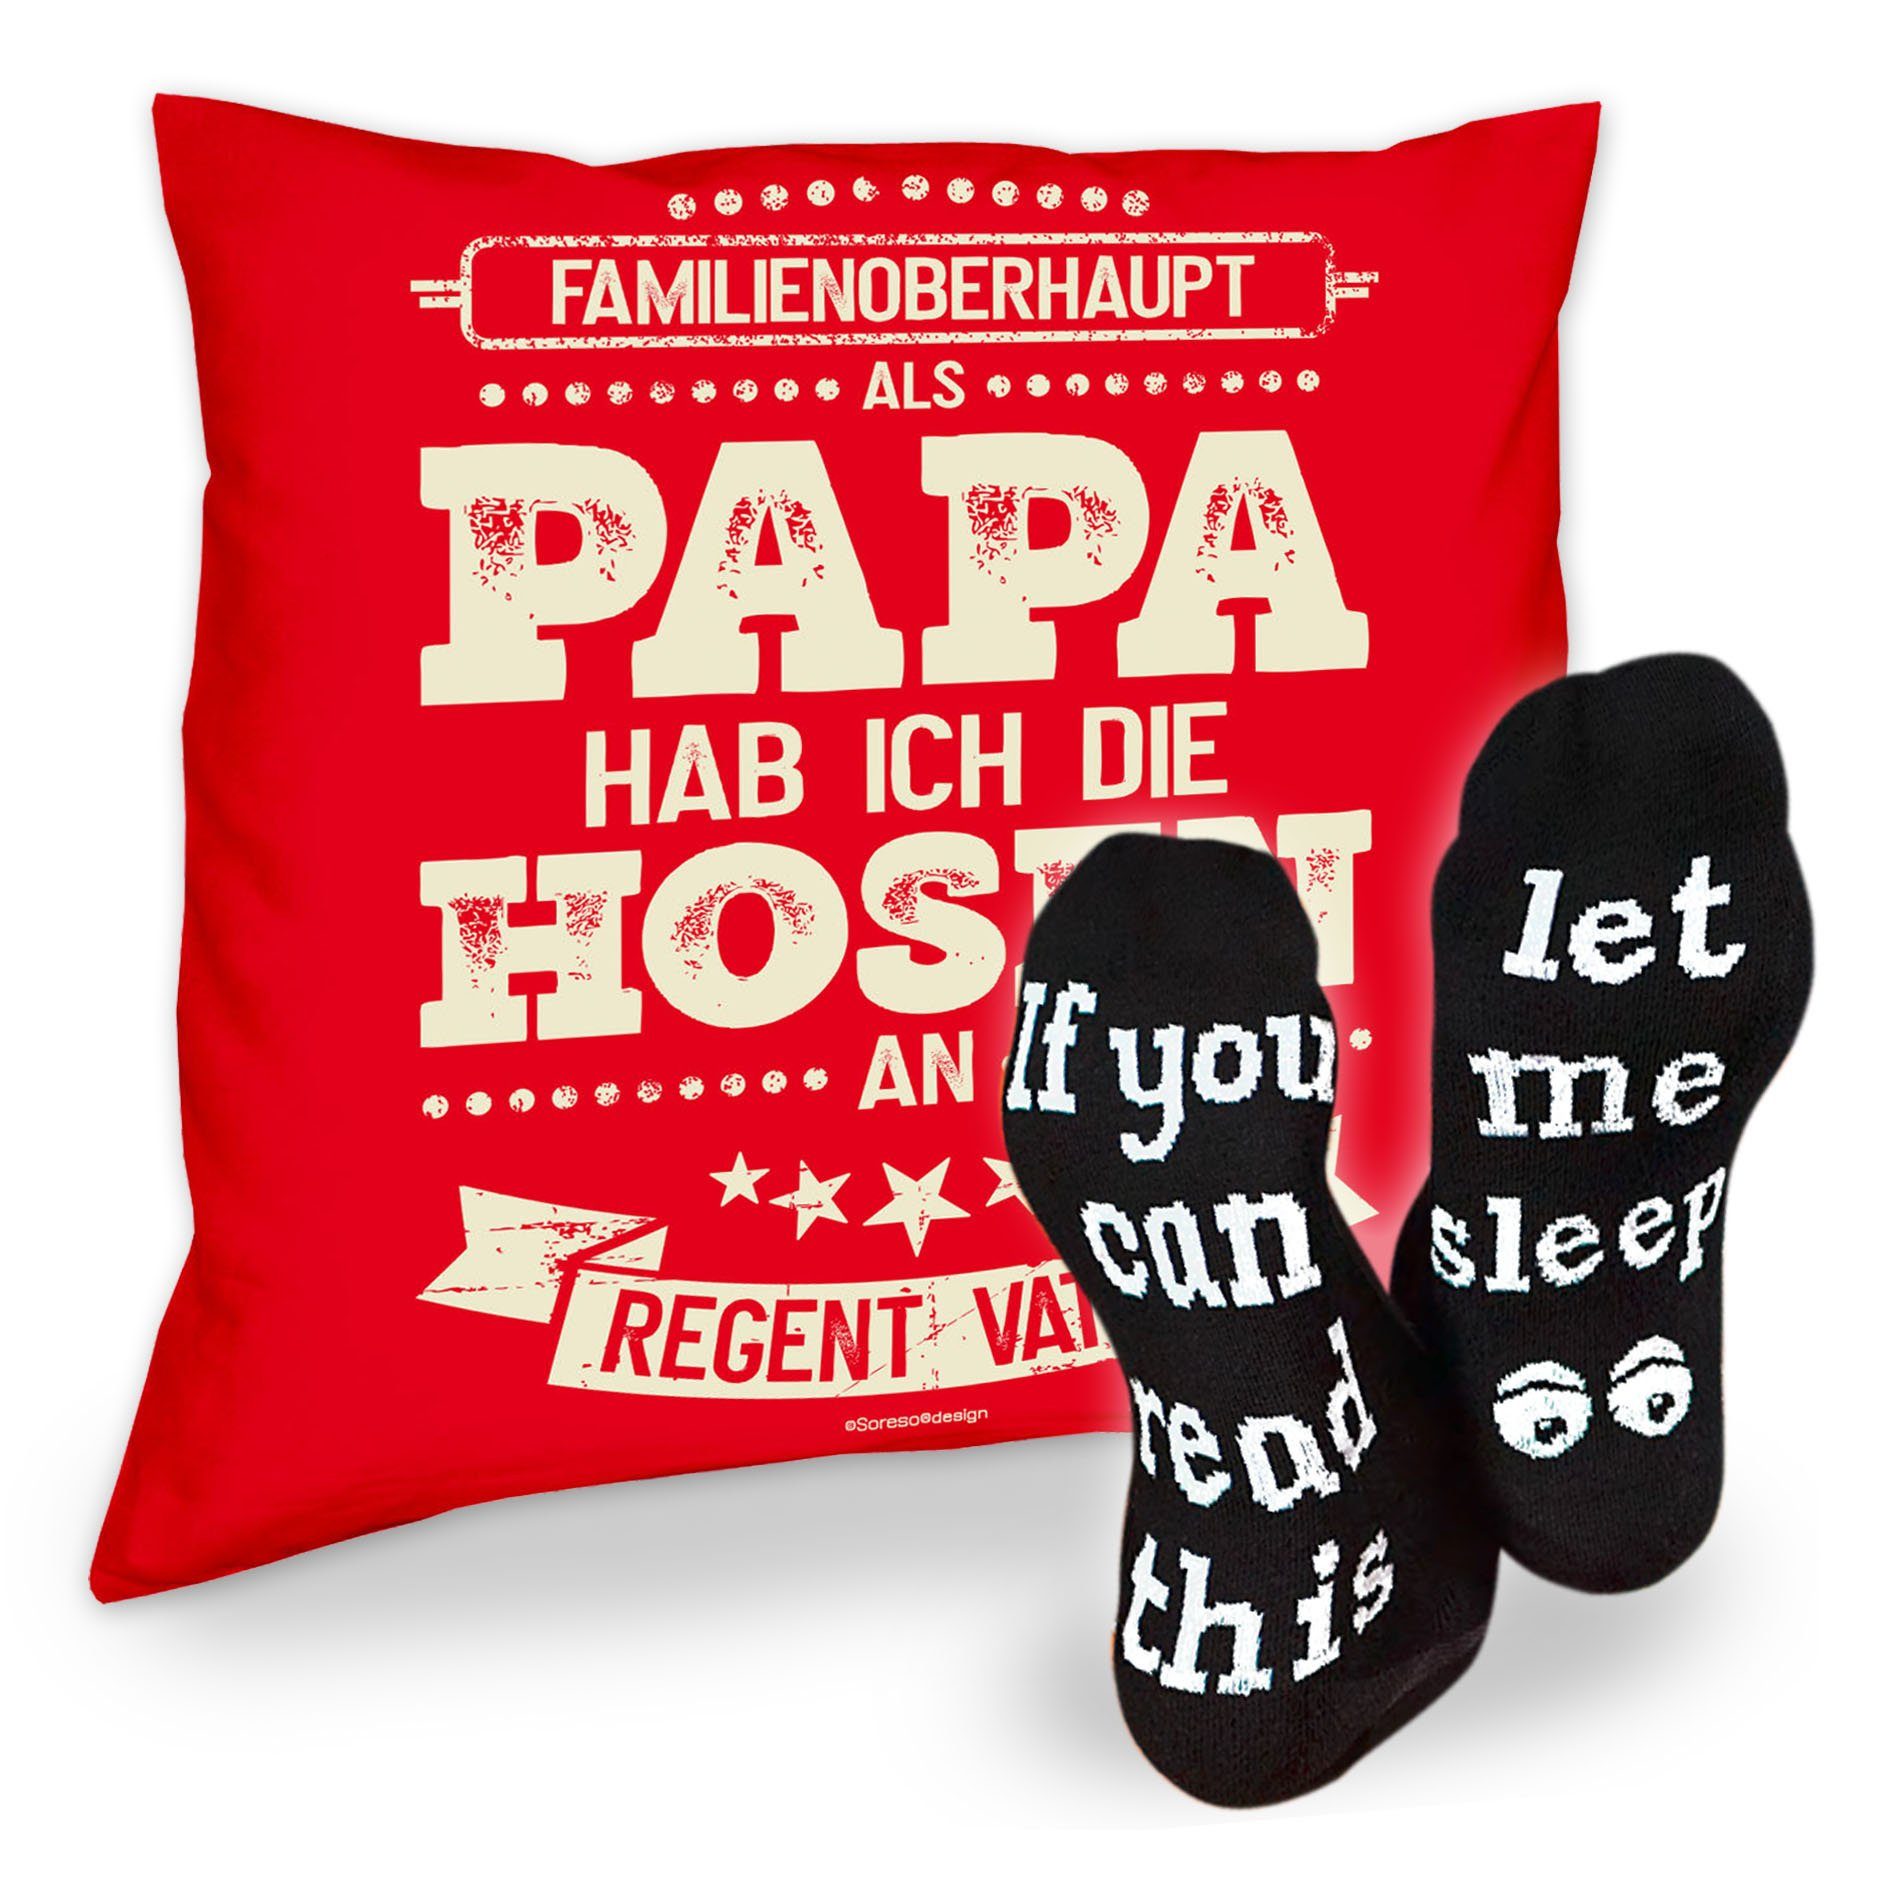 Soreso® Dekokissen Kissen Als Sleep, Geschenke Papa für die an ich hab Socken Väter & Hosen Geschenkidee rot Sprüche